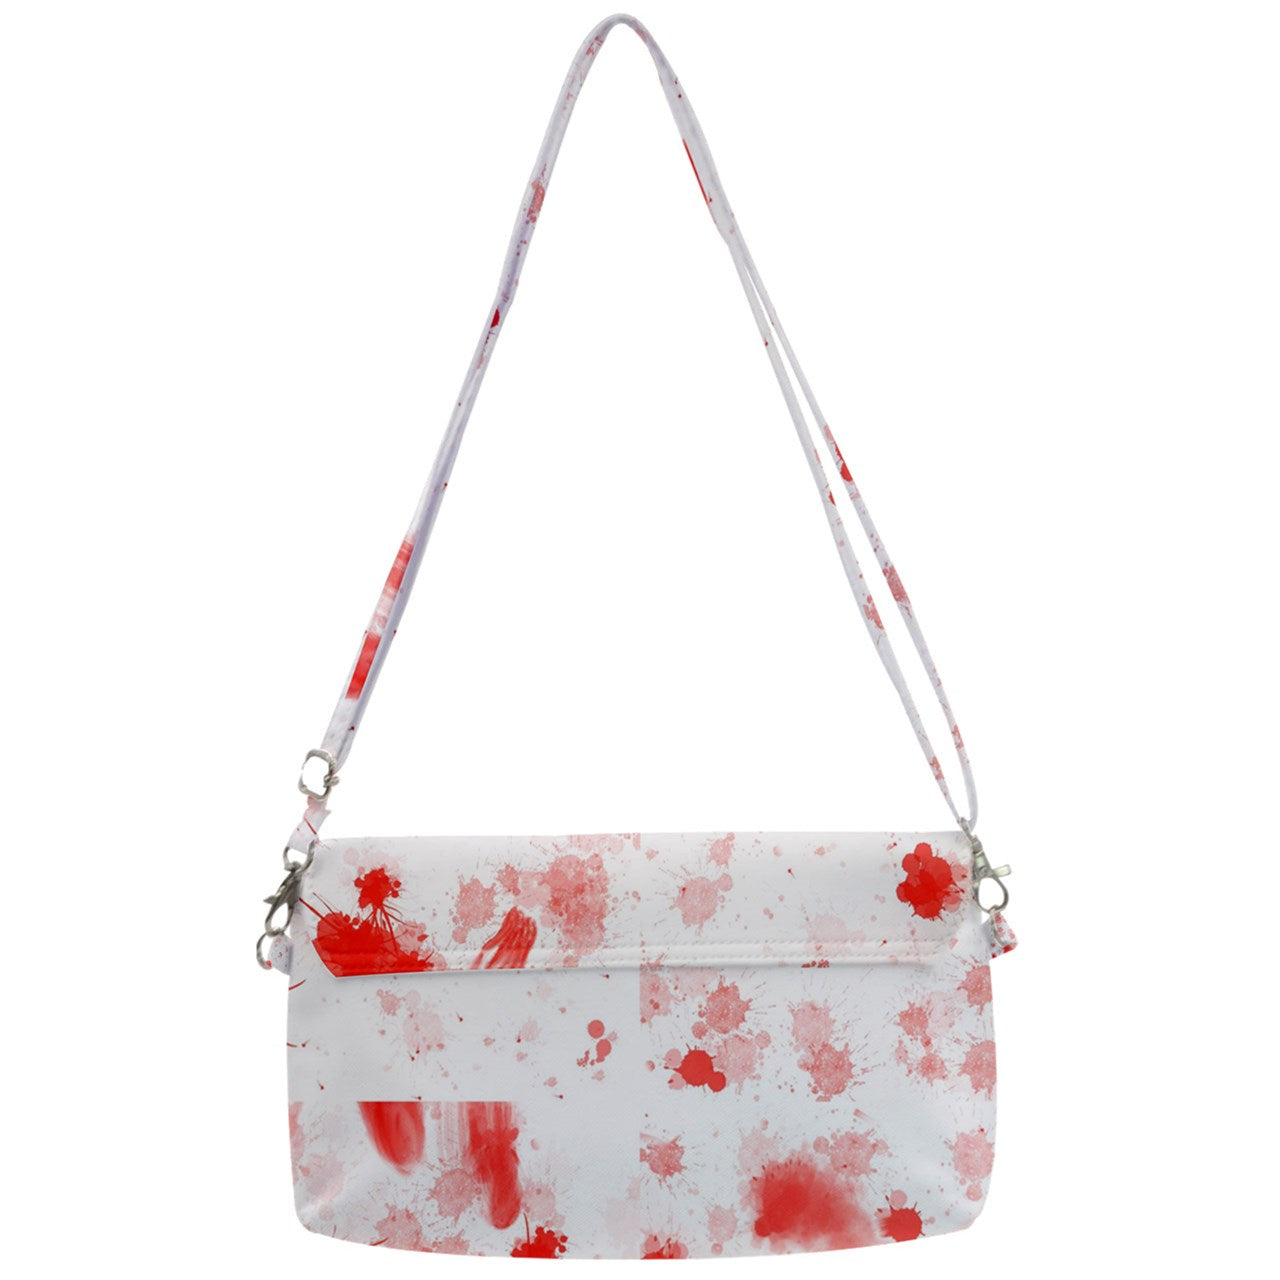 blood spatter Removable Strap Clutch Bag